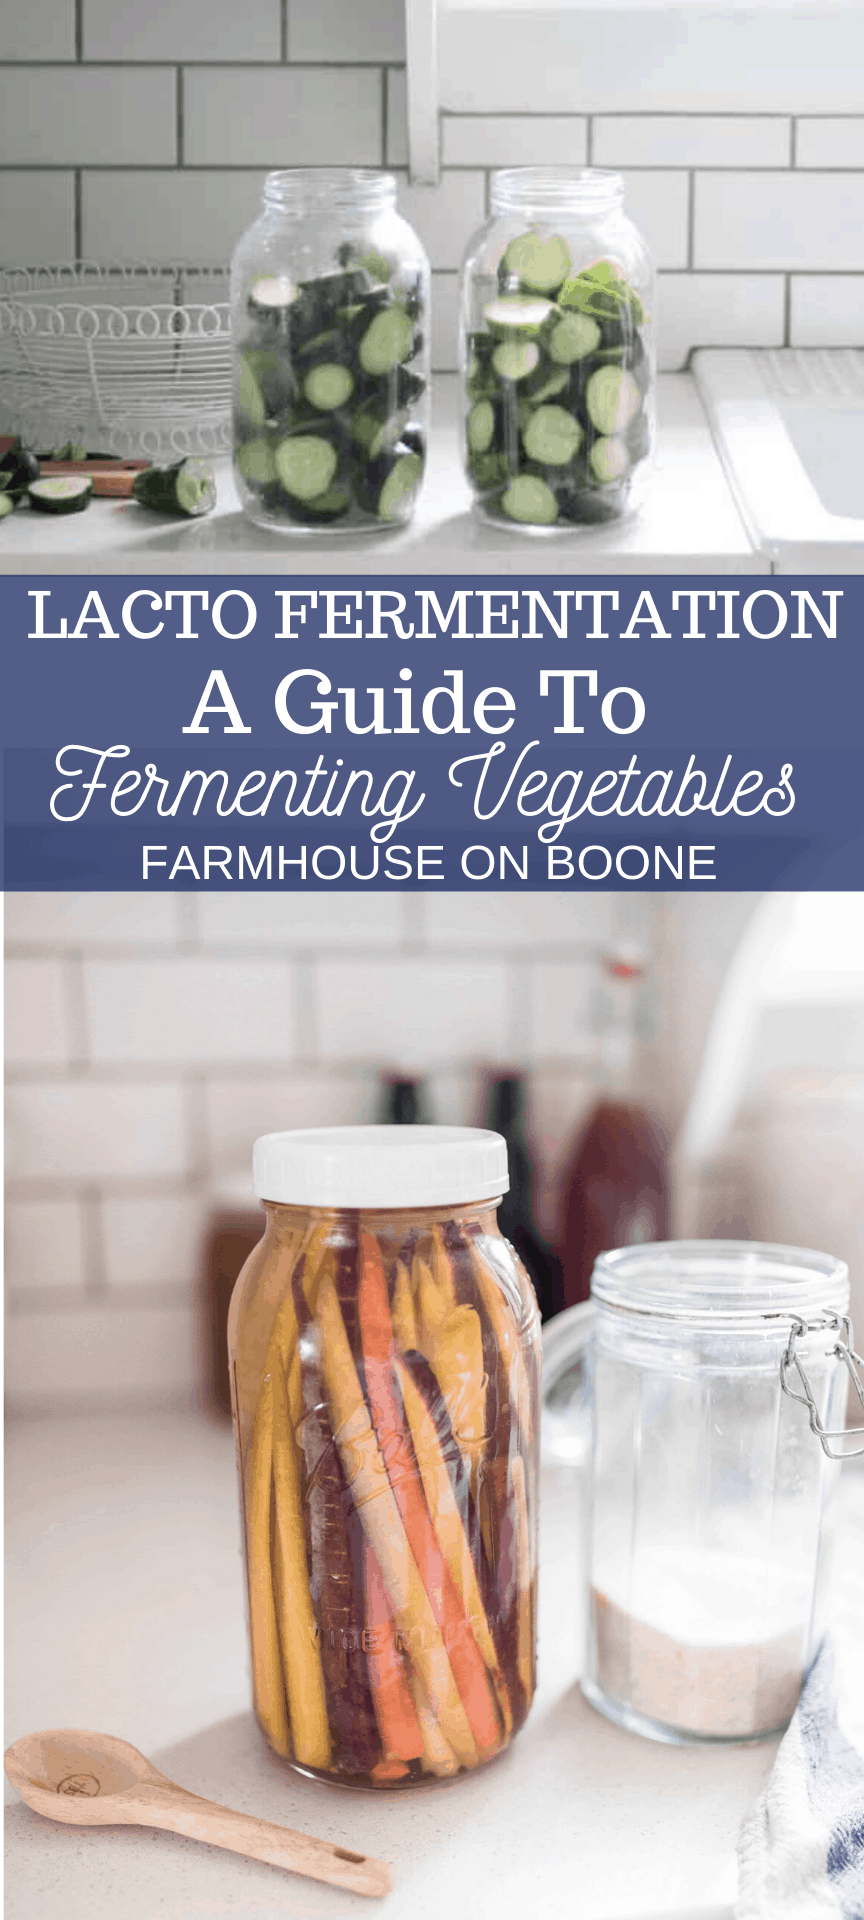 Let's Talk About Fermentation